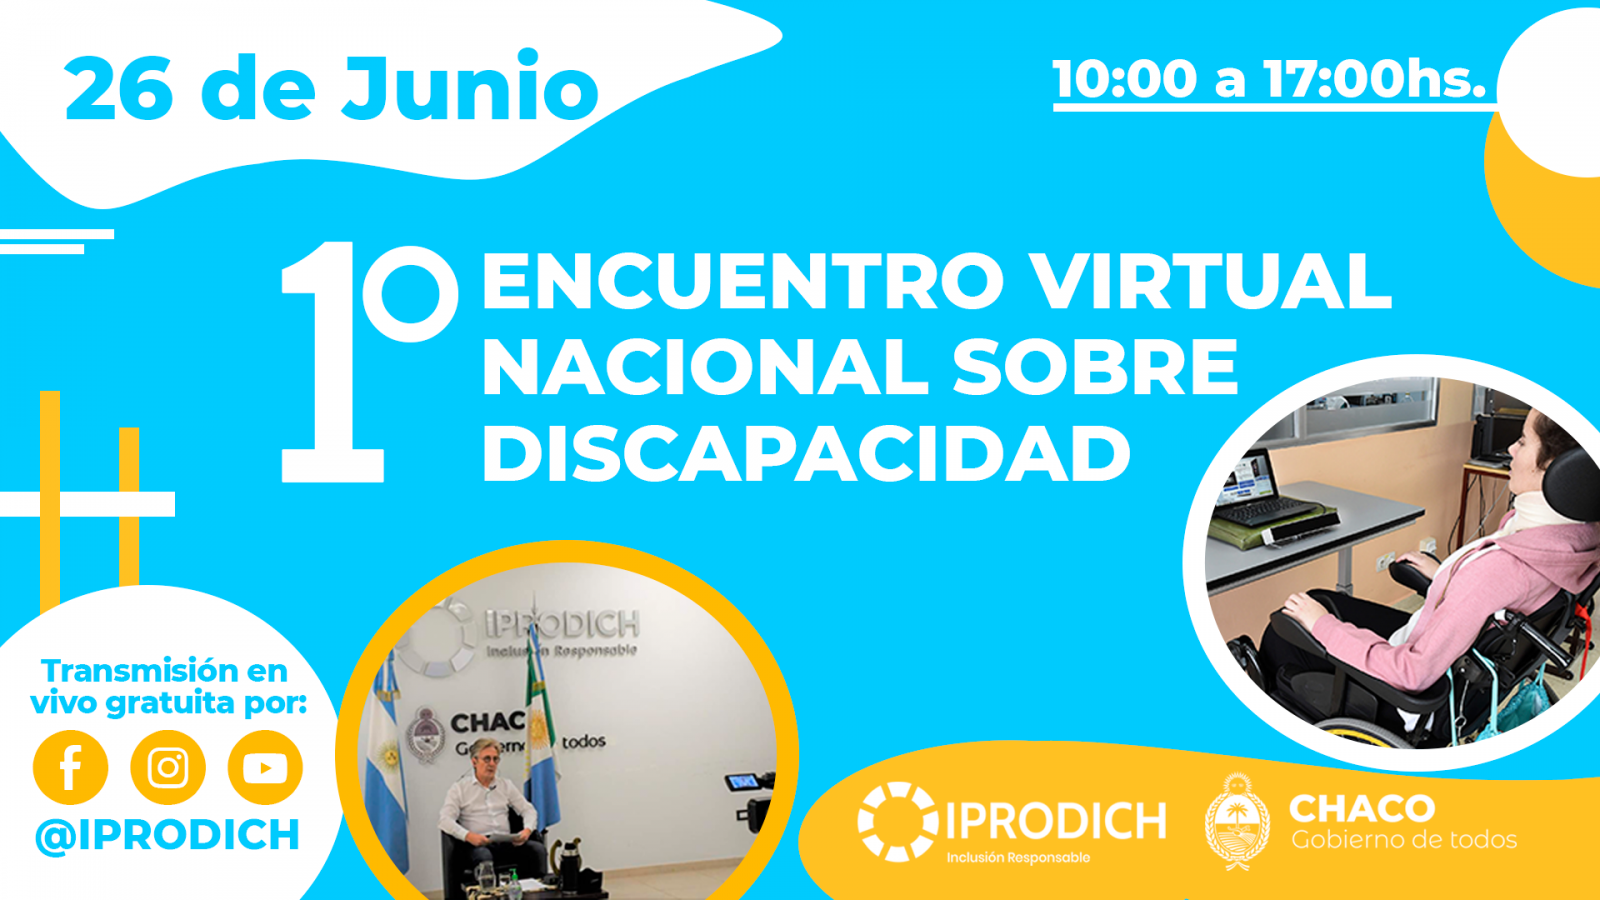 IPRODICH te invita a participar del 1° Encuentro Virtual Nacional sobre Discapacidad